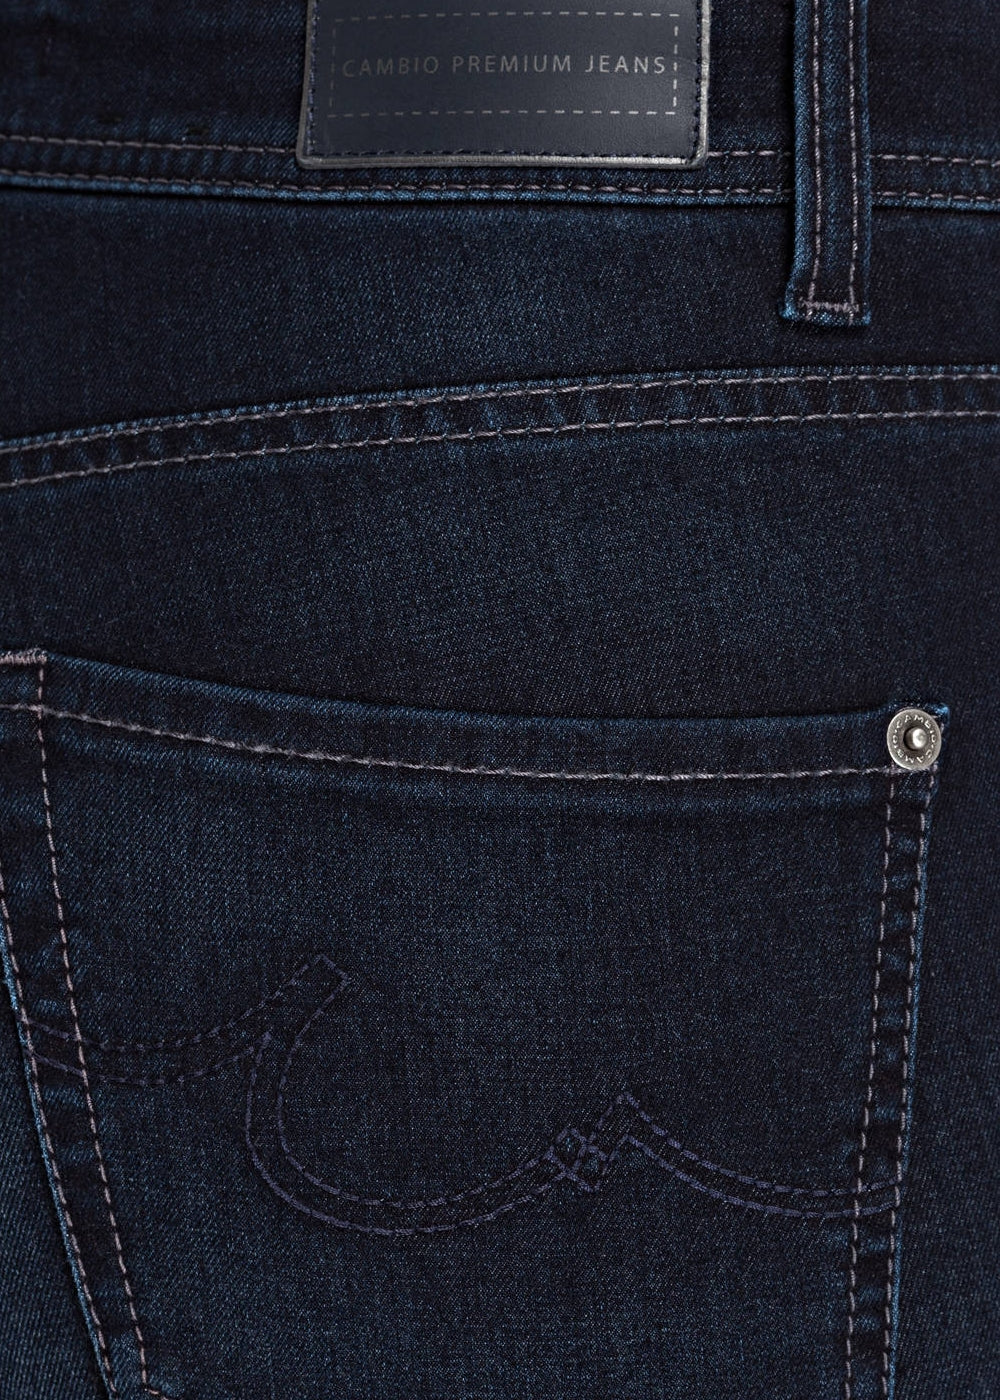 Cambio Jeans Parla in denim blau. Slim fit 5-Pocket Hose in weicher 360 Komfort Denim Ware online kaufen. Parla Jeans in denim blau mit normaler Länge und Taille aus der neuen Cambio Kollektion.